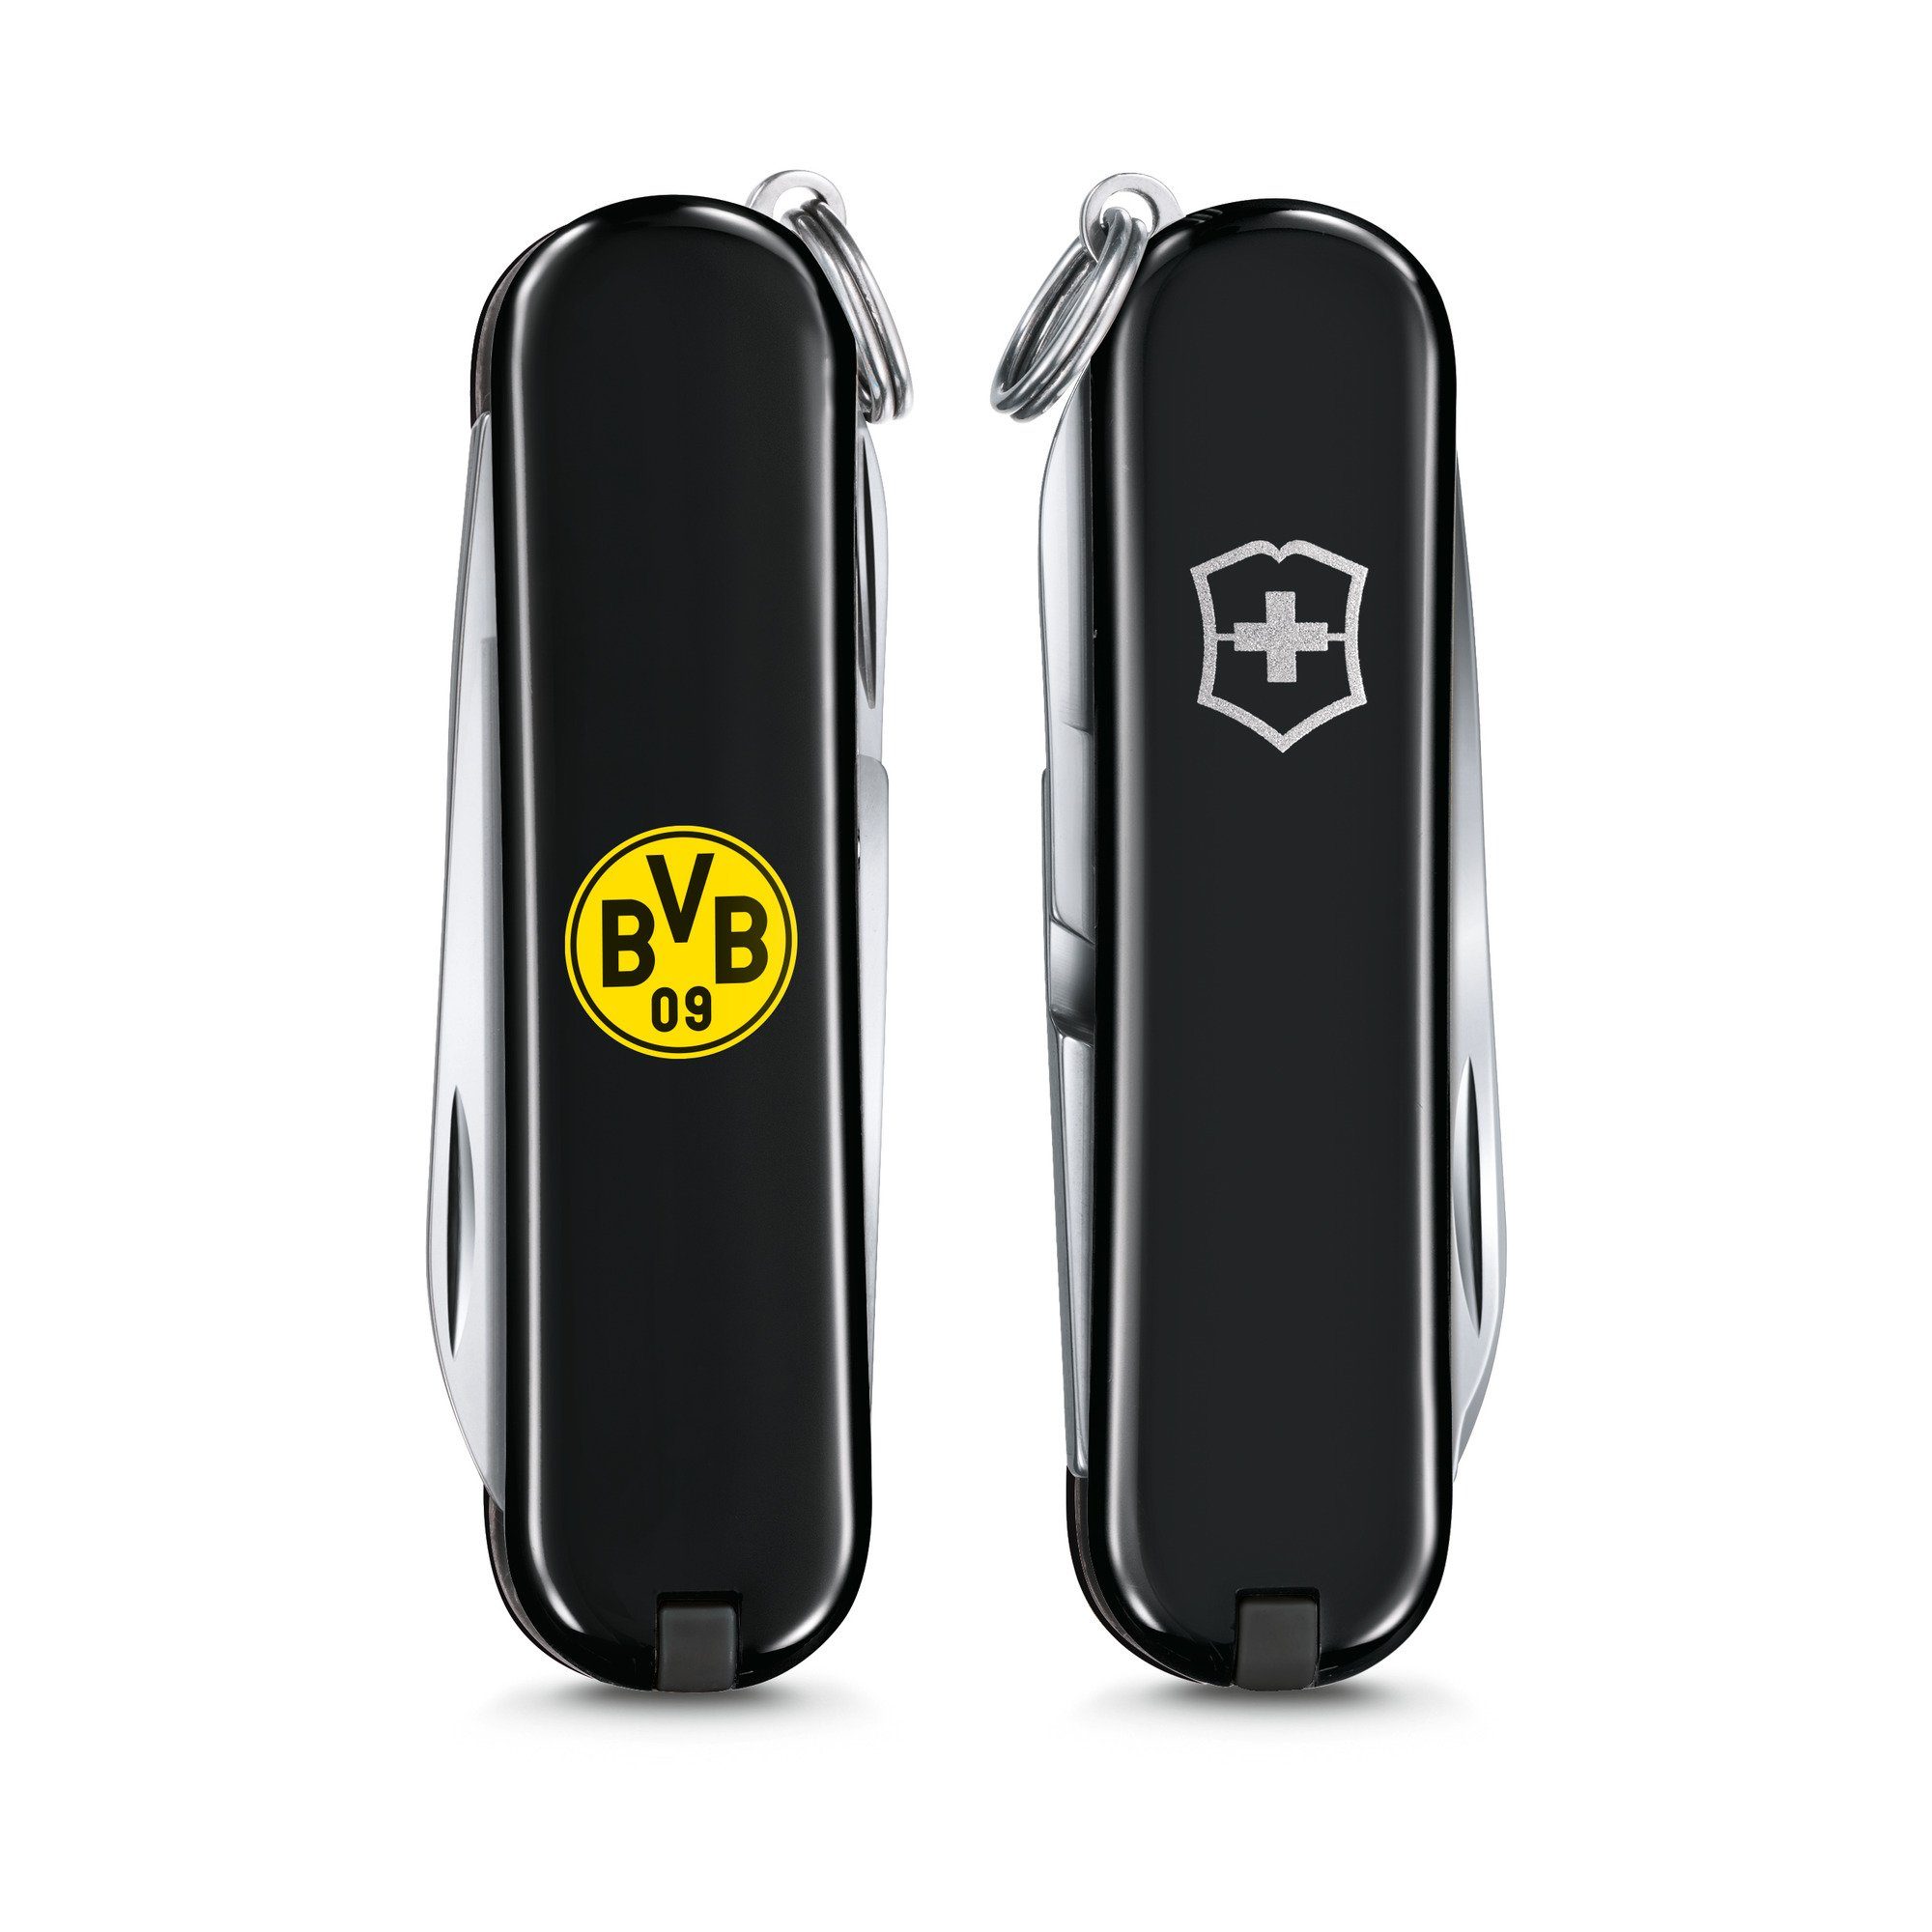 Messer Victorinox Taschenmesser SD schwarz BVB Borussia-Dortmund-Design Classic